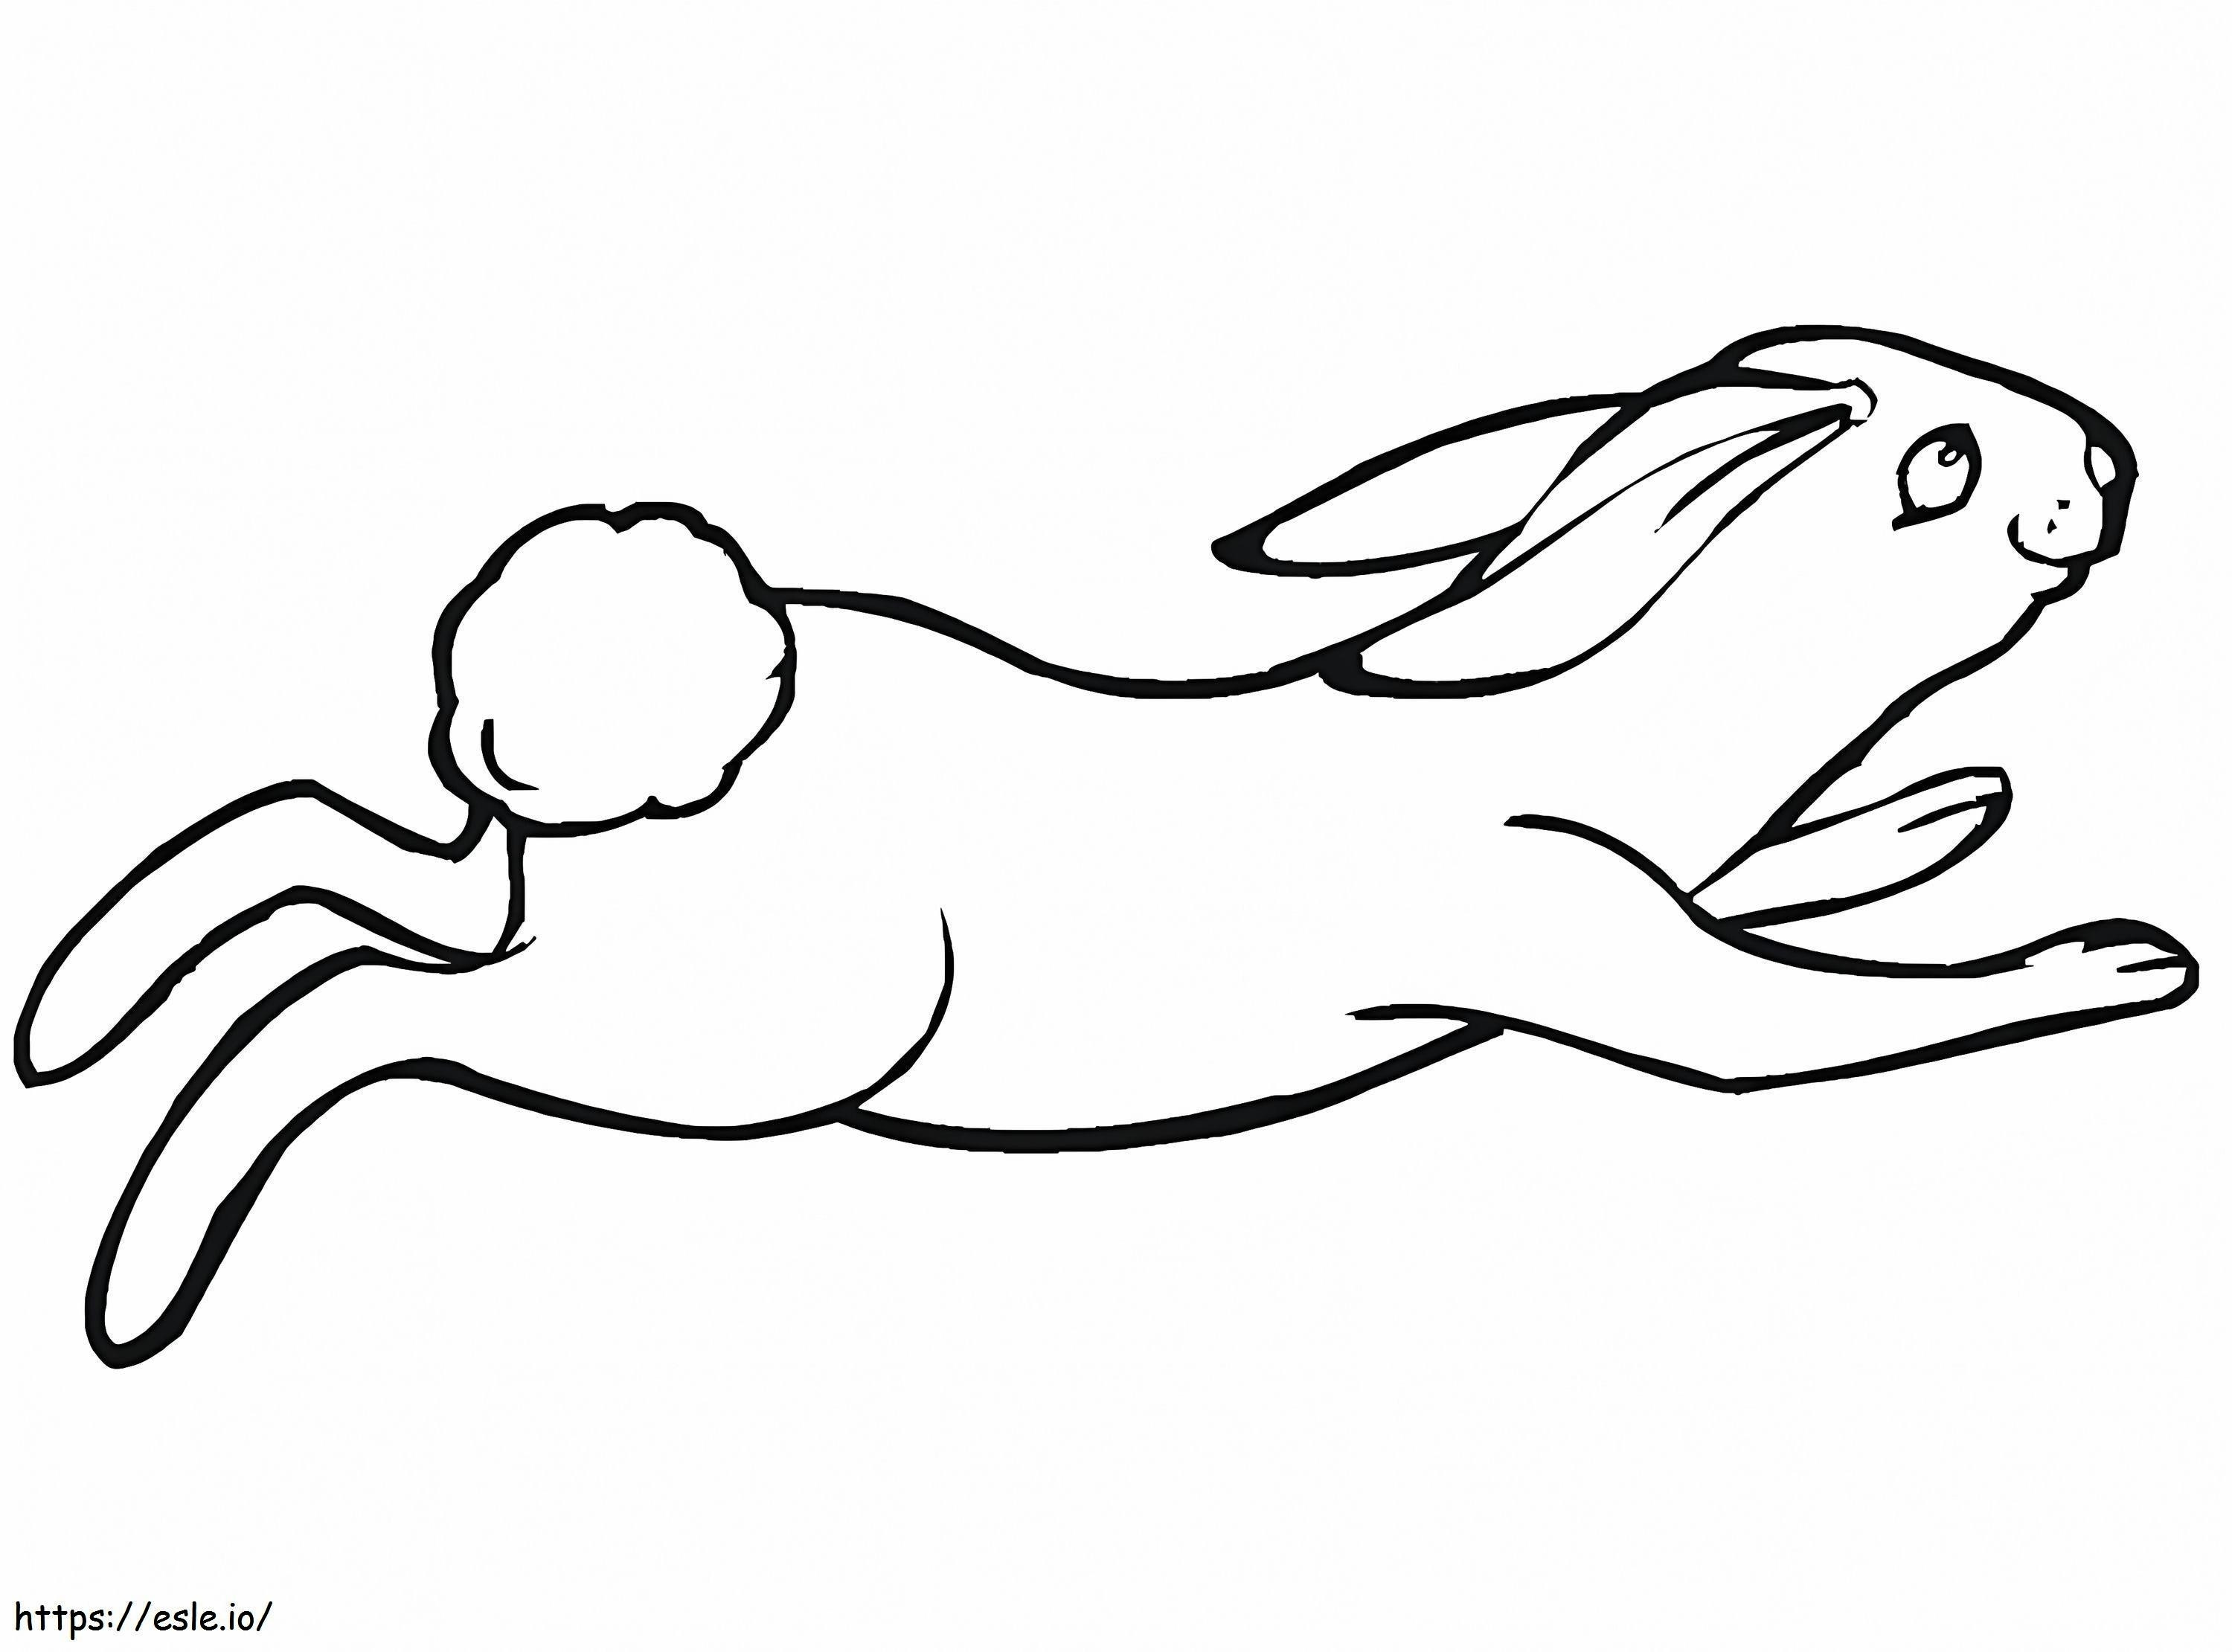 Zıplayan Jack Tavşan boyama